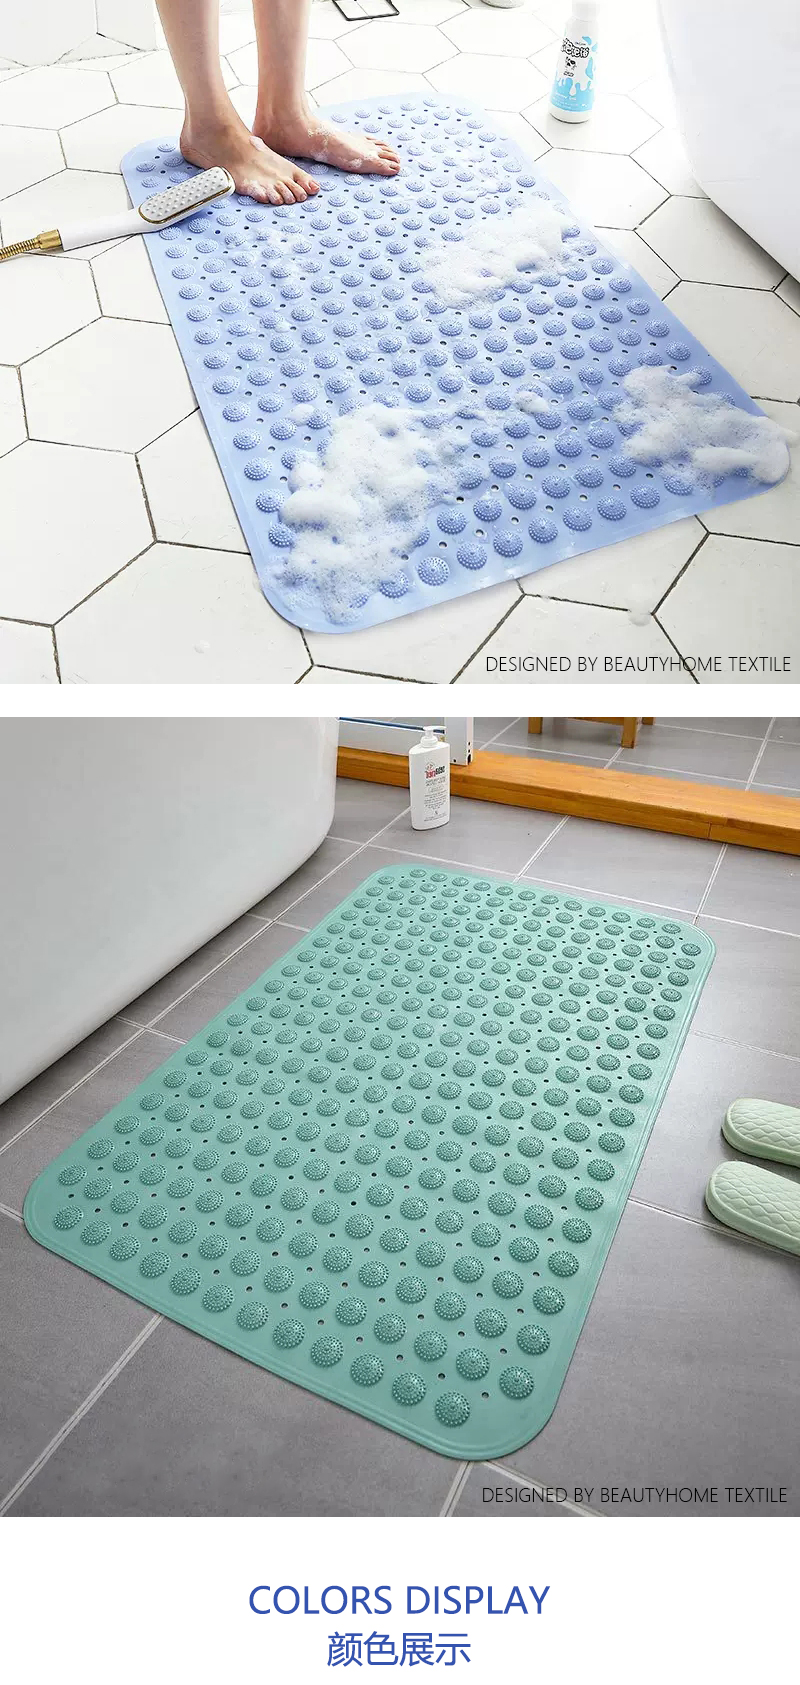 IBH浴室防滑垫PVC防滑地垫酒店卫浴浴缸脚垫按摩垫洗澡淋浴垫地毯carpet mat rug BH22112653详情9